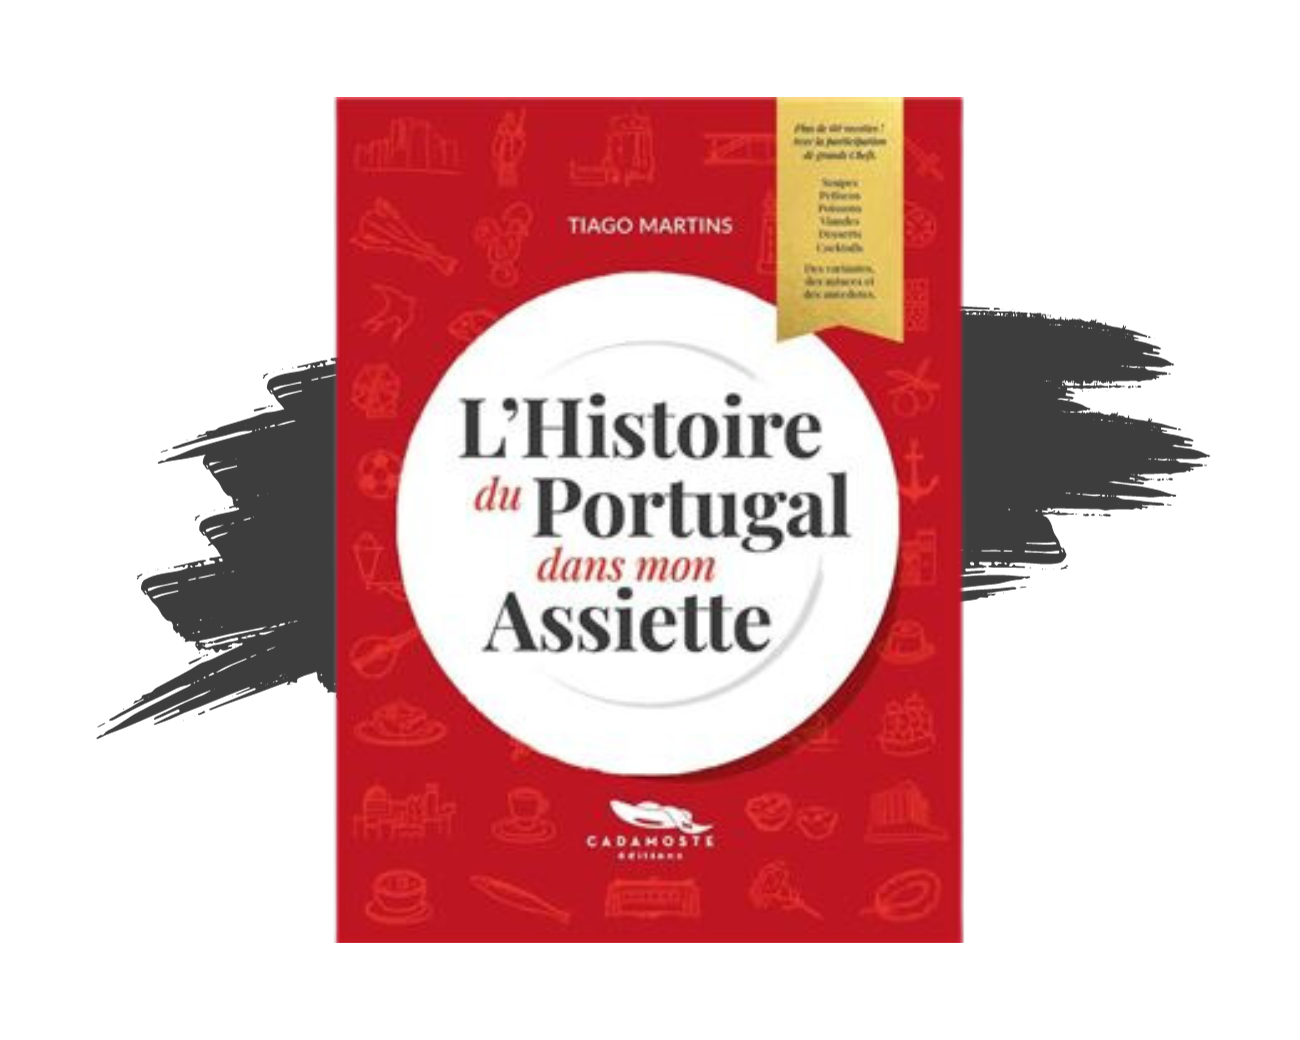 Le livre de cuisine "L'Histoire du Portugal dans mon assiette" de Tiago Martins.